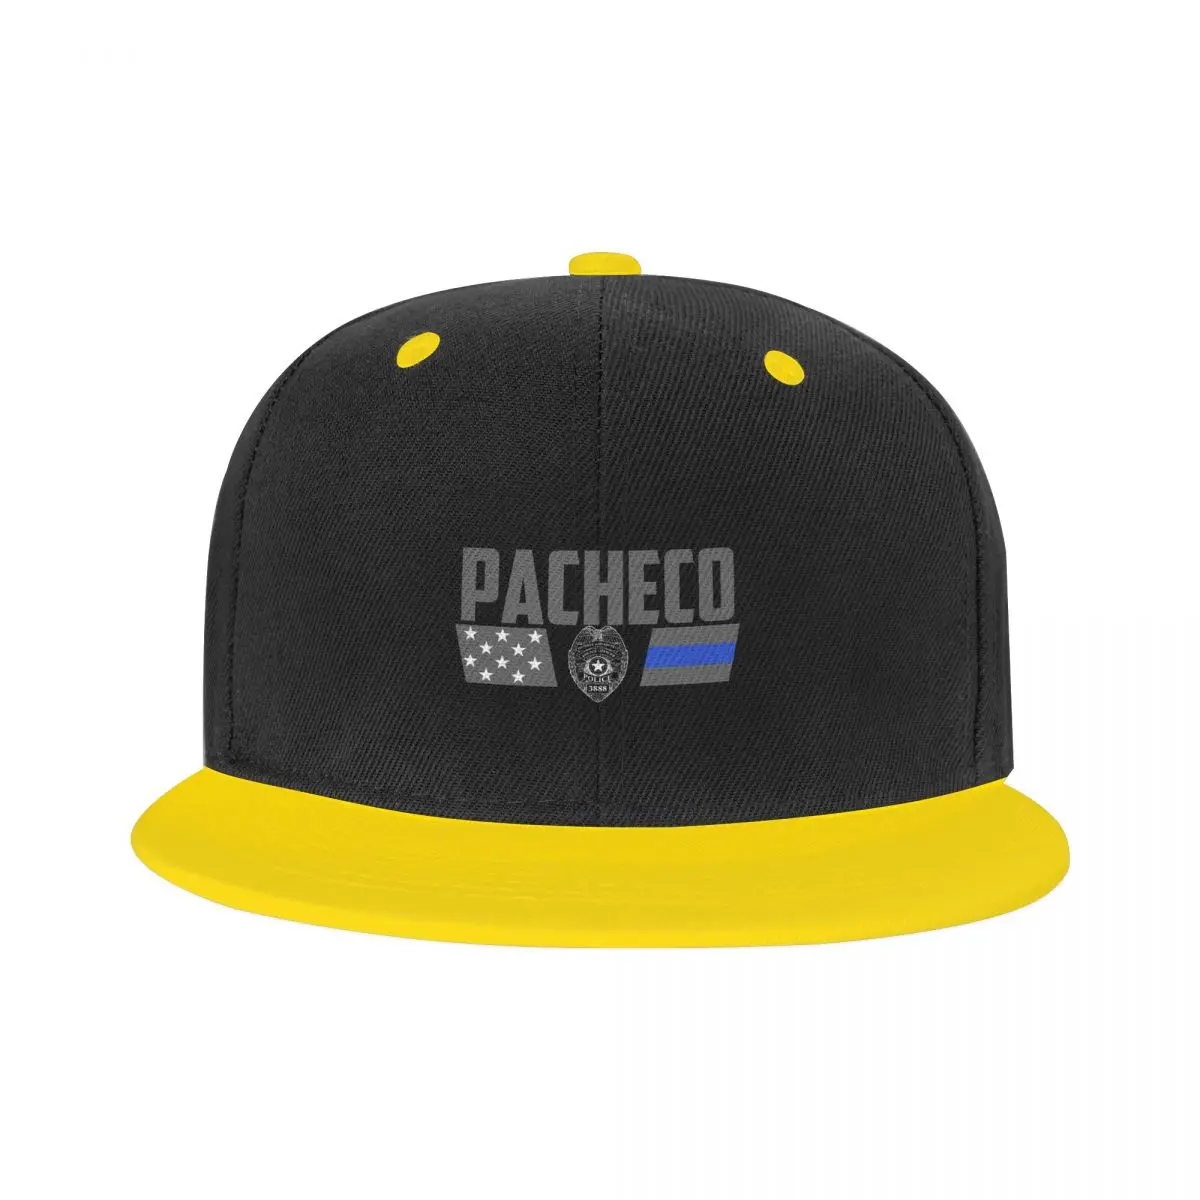 Бейсболки Pacheco Family Police Children Snapback Cap, яркие бейсболки премиум-класса для подростков